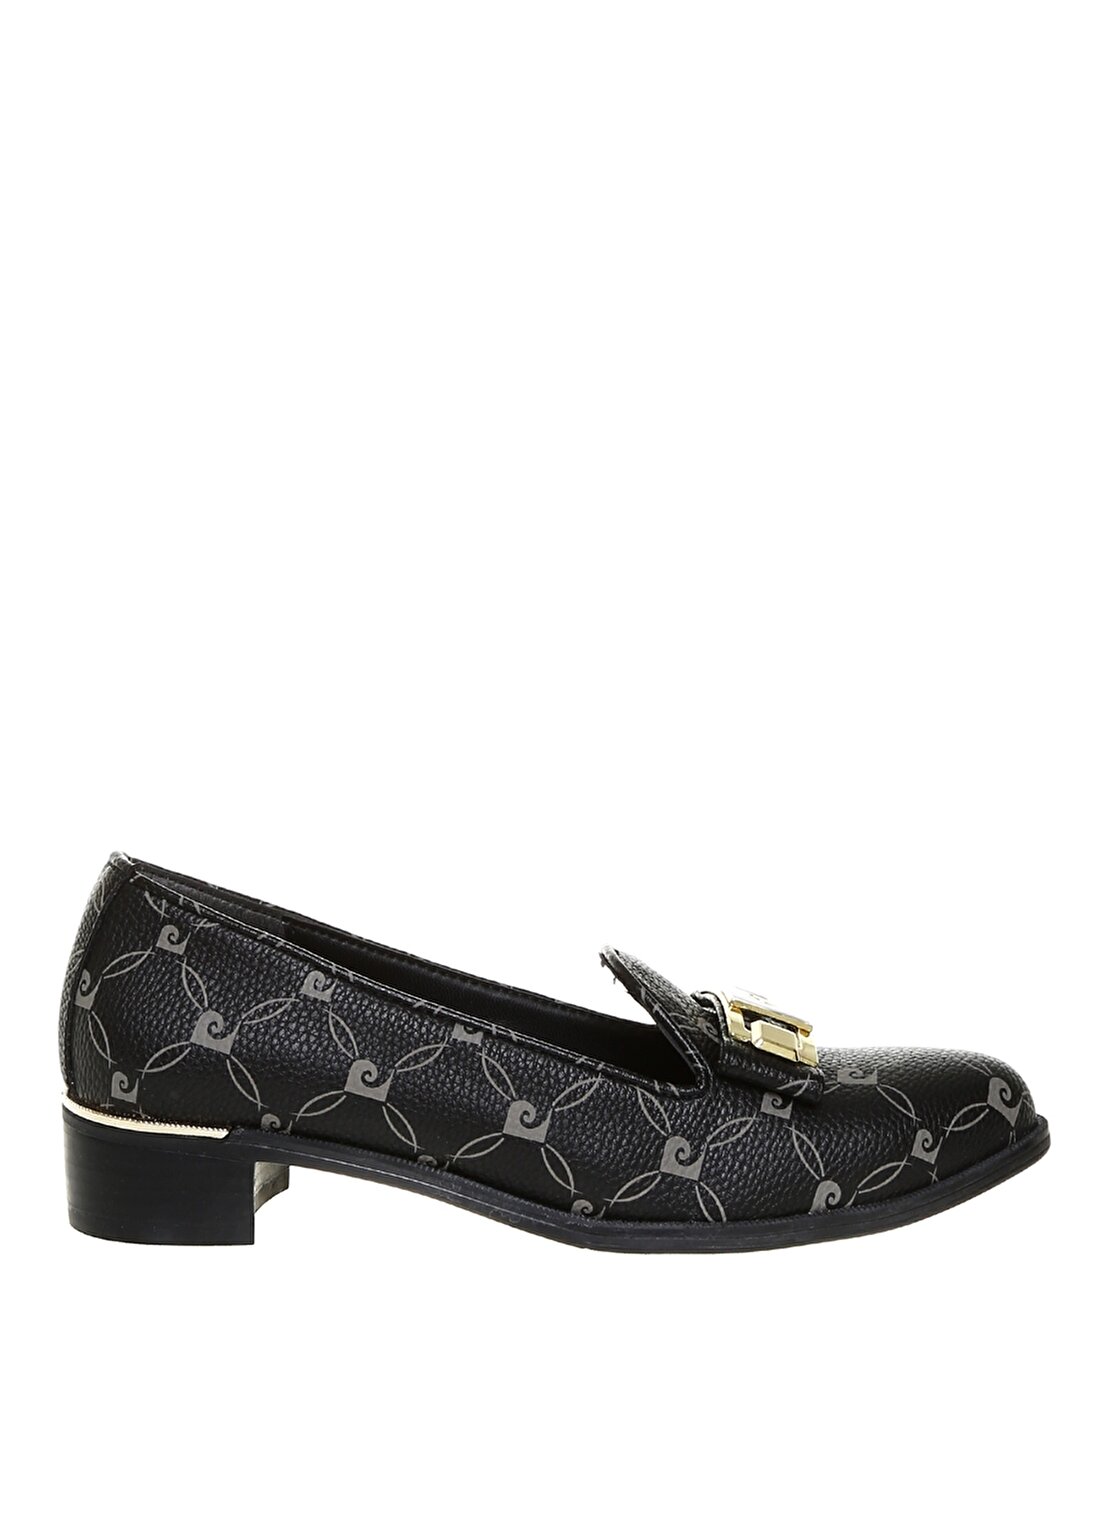 Pierre Cardin Kadın Tokalı Siyah Topuklu Ayakkabı